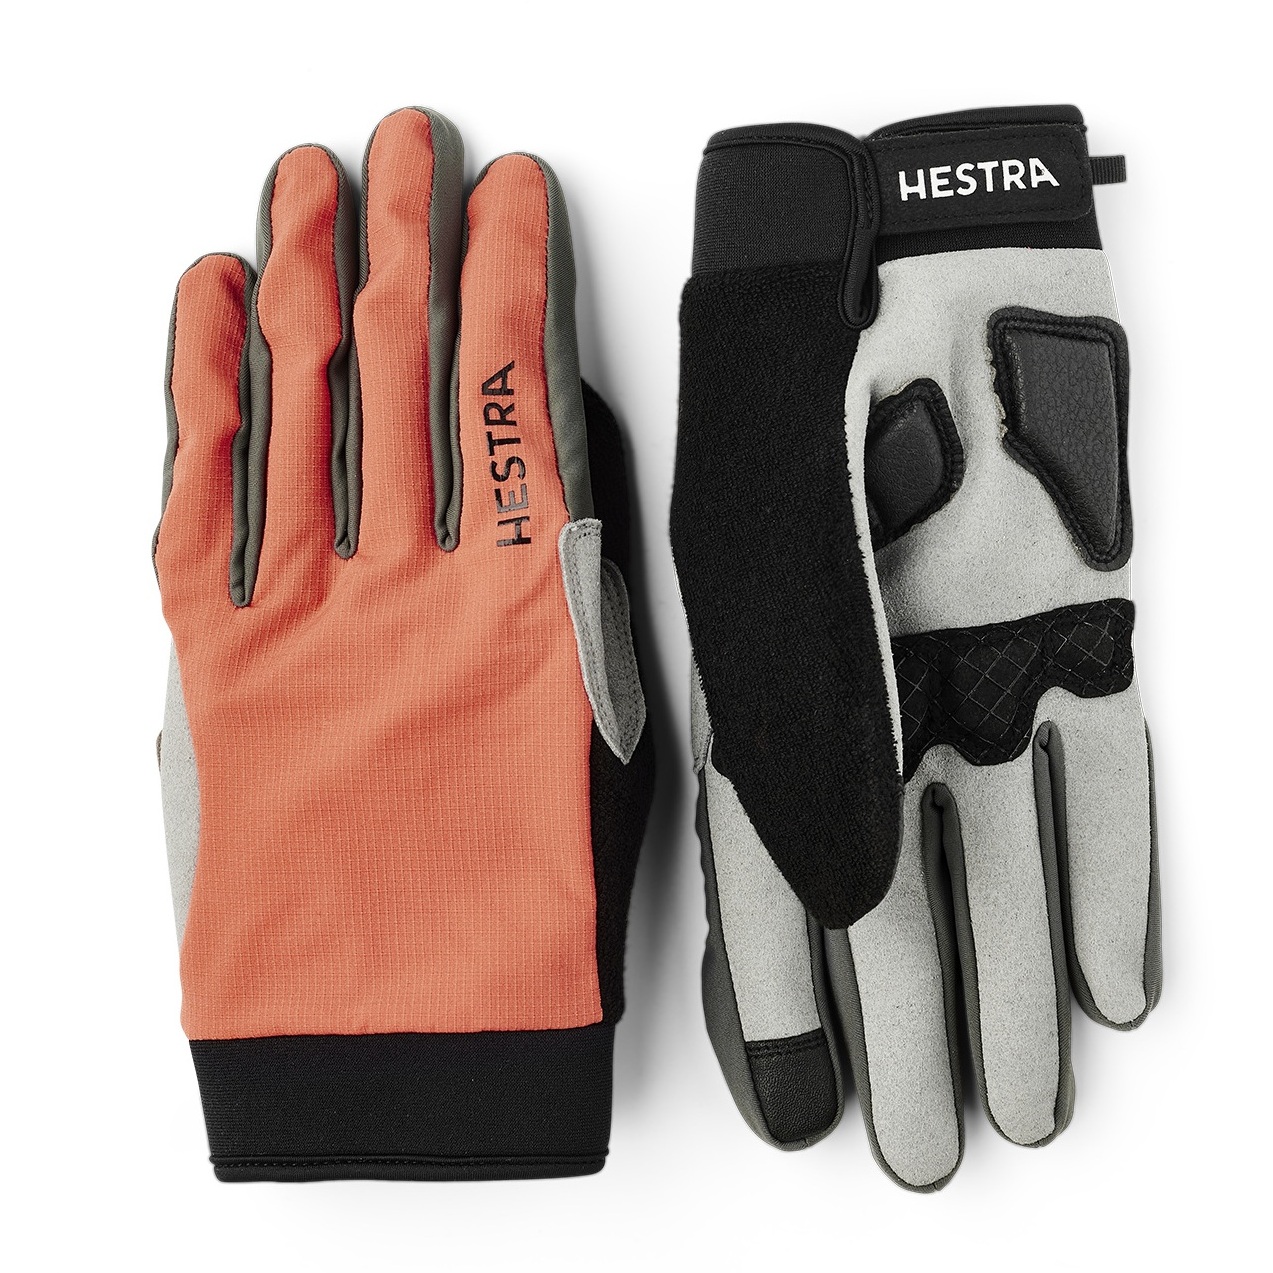 Image of Hestra Bike Guard Long - 5 Finger Gloves - orange